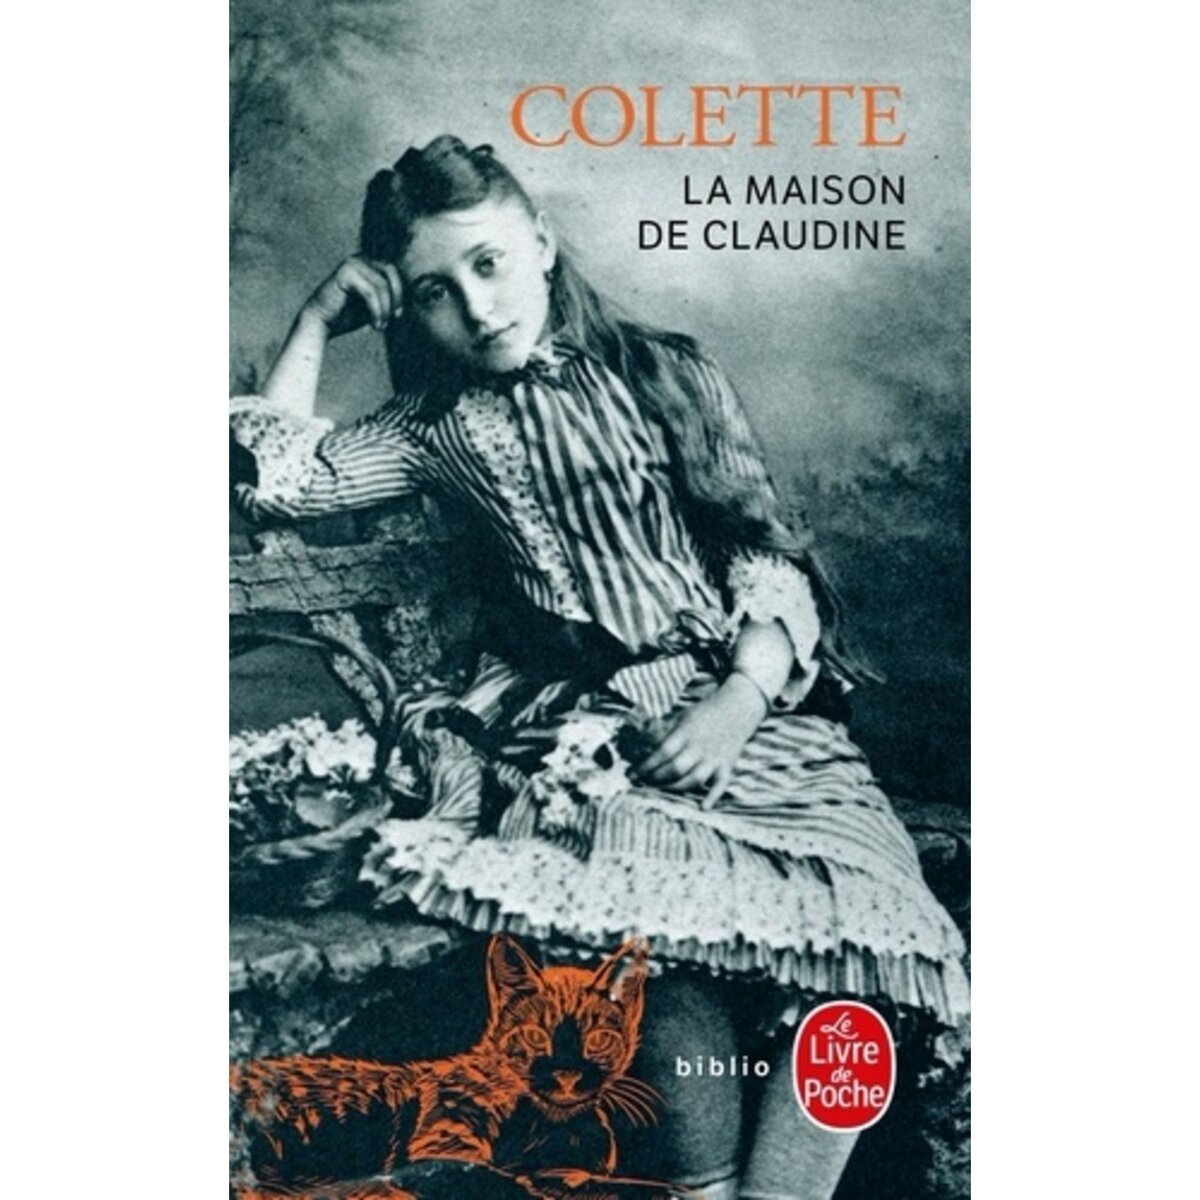  LA MAISON DE CLAUDINE, Colette